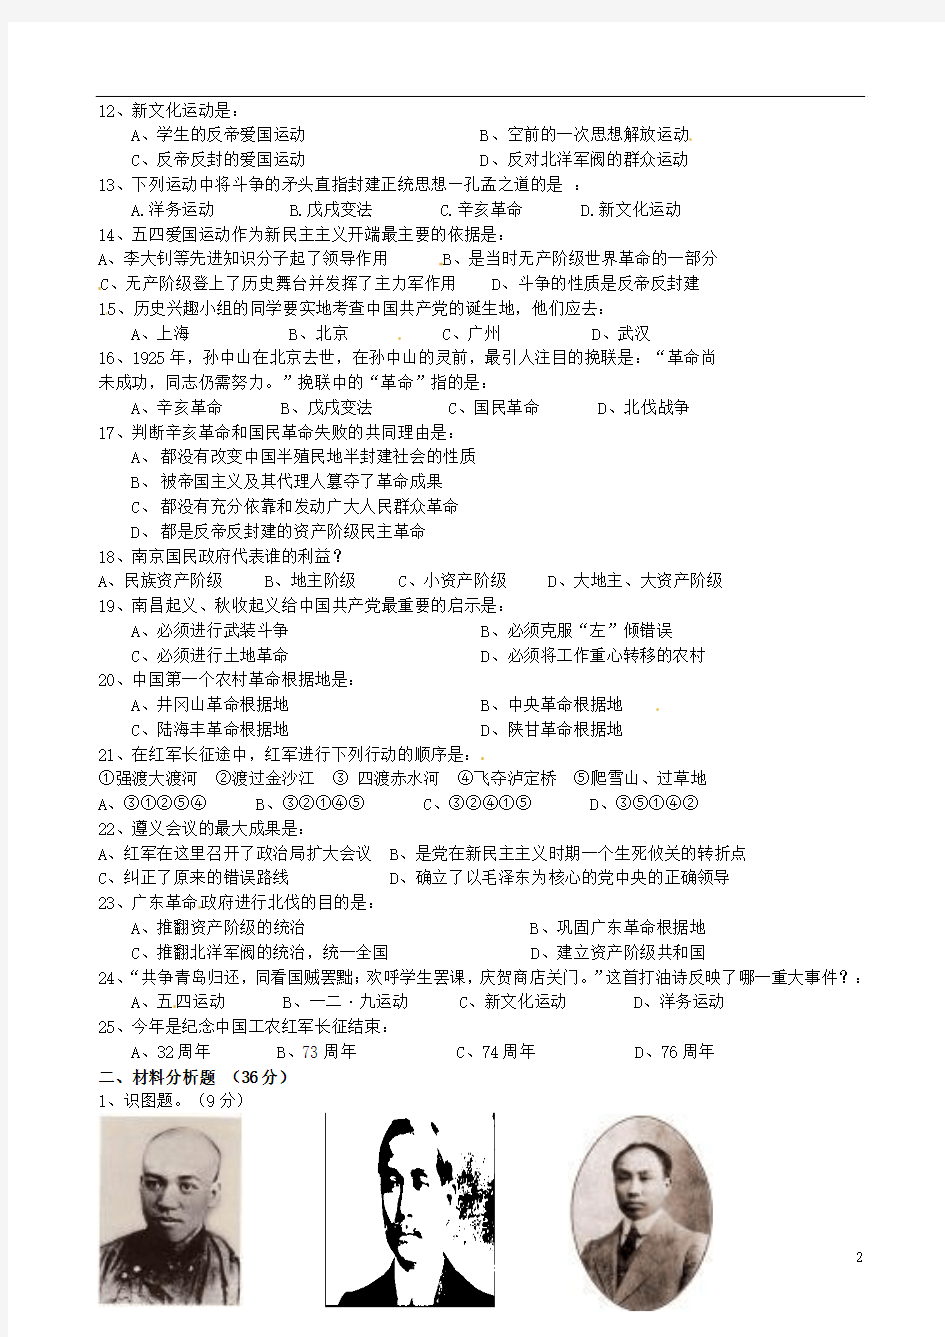 广西桂林市逸仙中学2012-2013学年八年级历史上学期段考试题